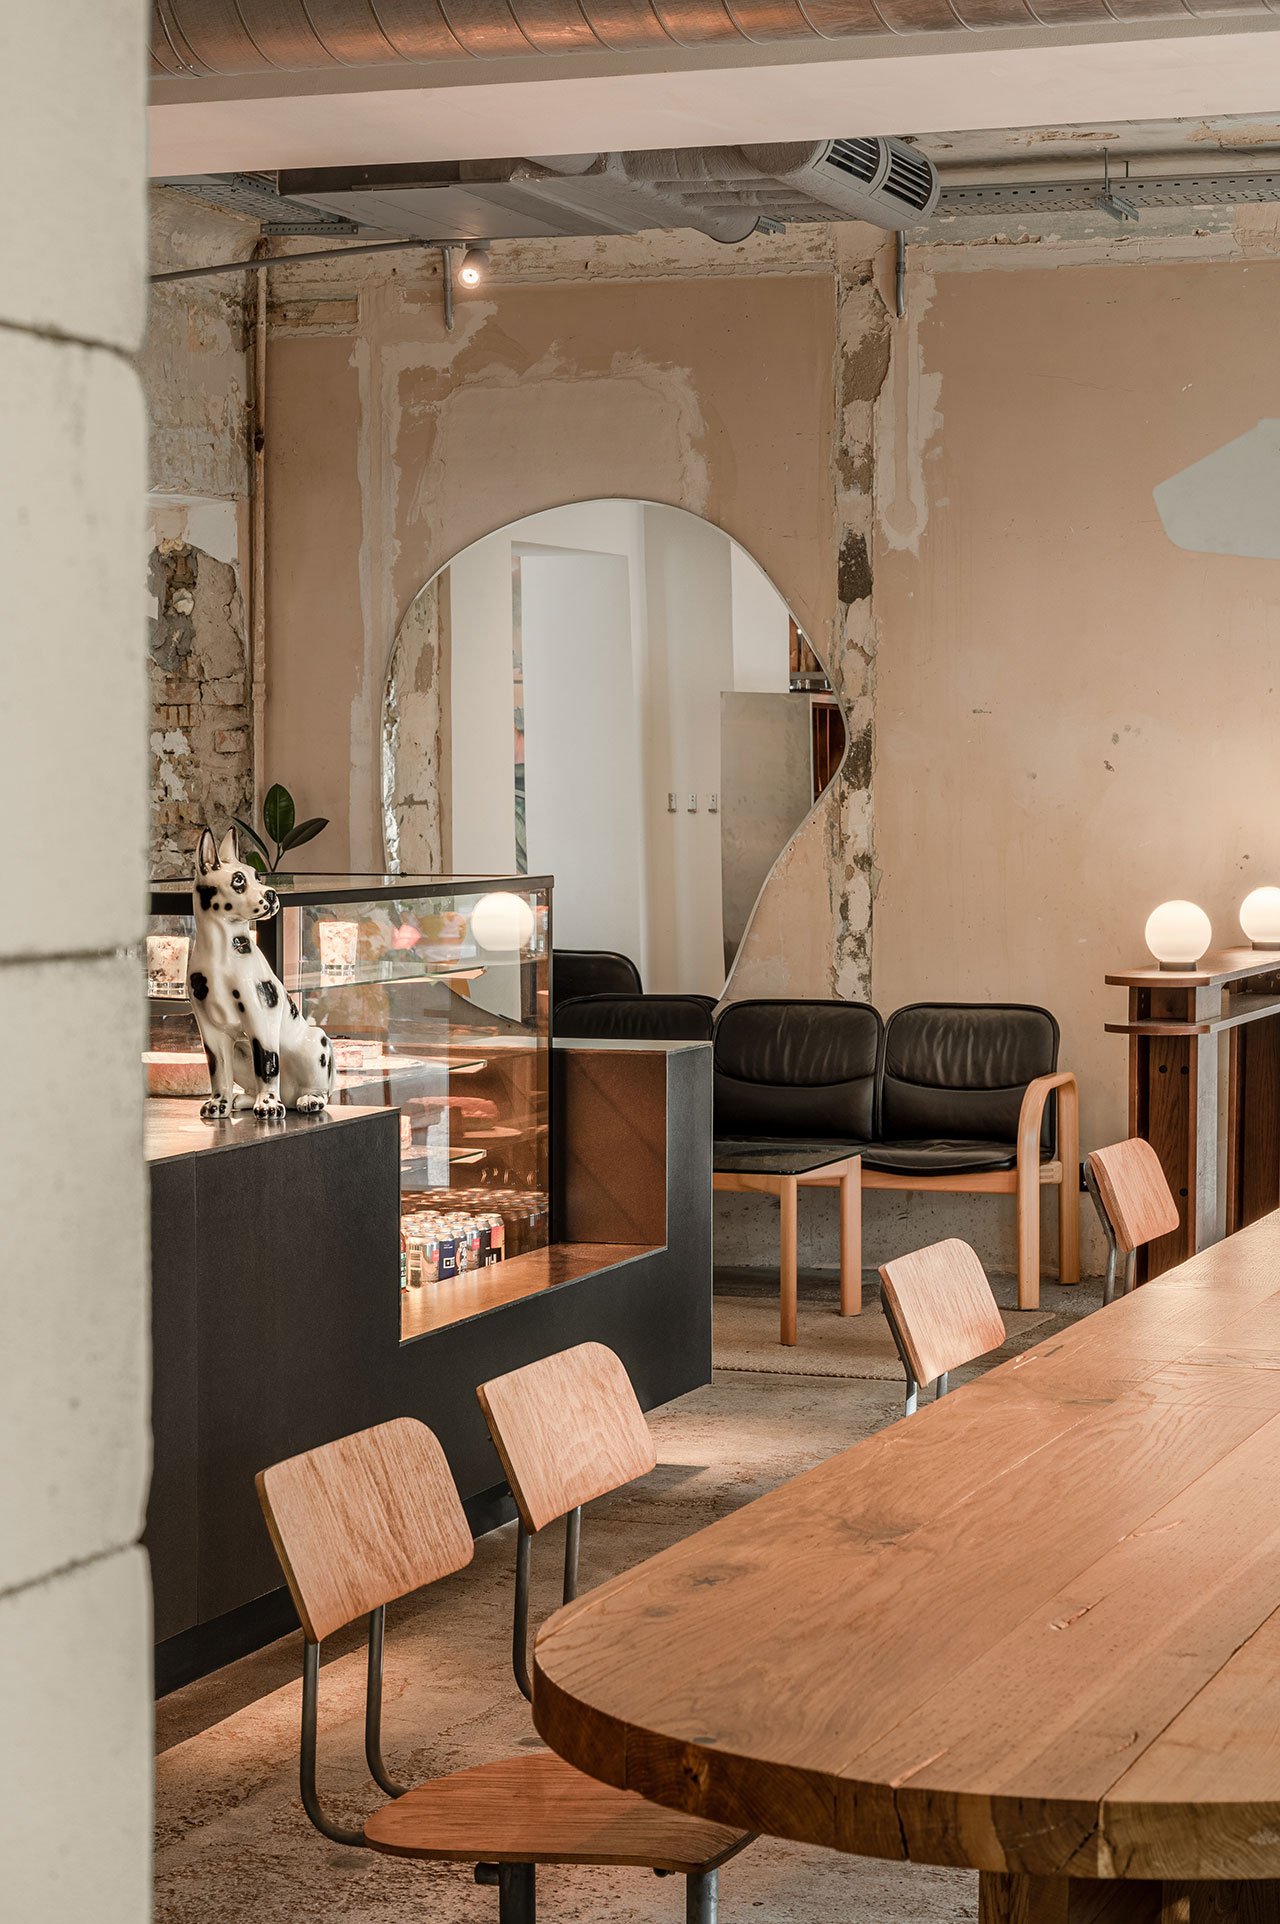 老式真皮沙发、老式玻璃和木质咖啡桌以及 1990 年代的黄色 Lumibär 灯,乌克兰基辅Dubler咖啡馆都是复古格调魅力咖啡馆,自然、复古、柔和的色调，原始顶面，艺术笔画、裸油漆